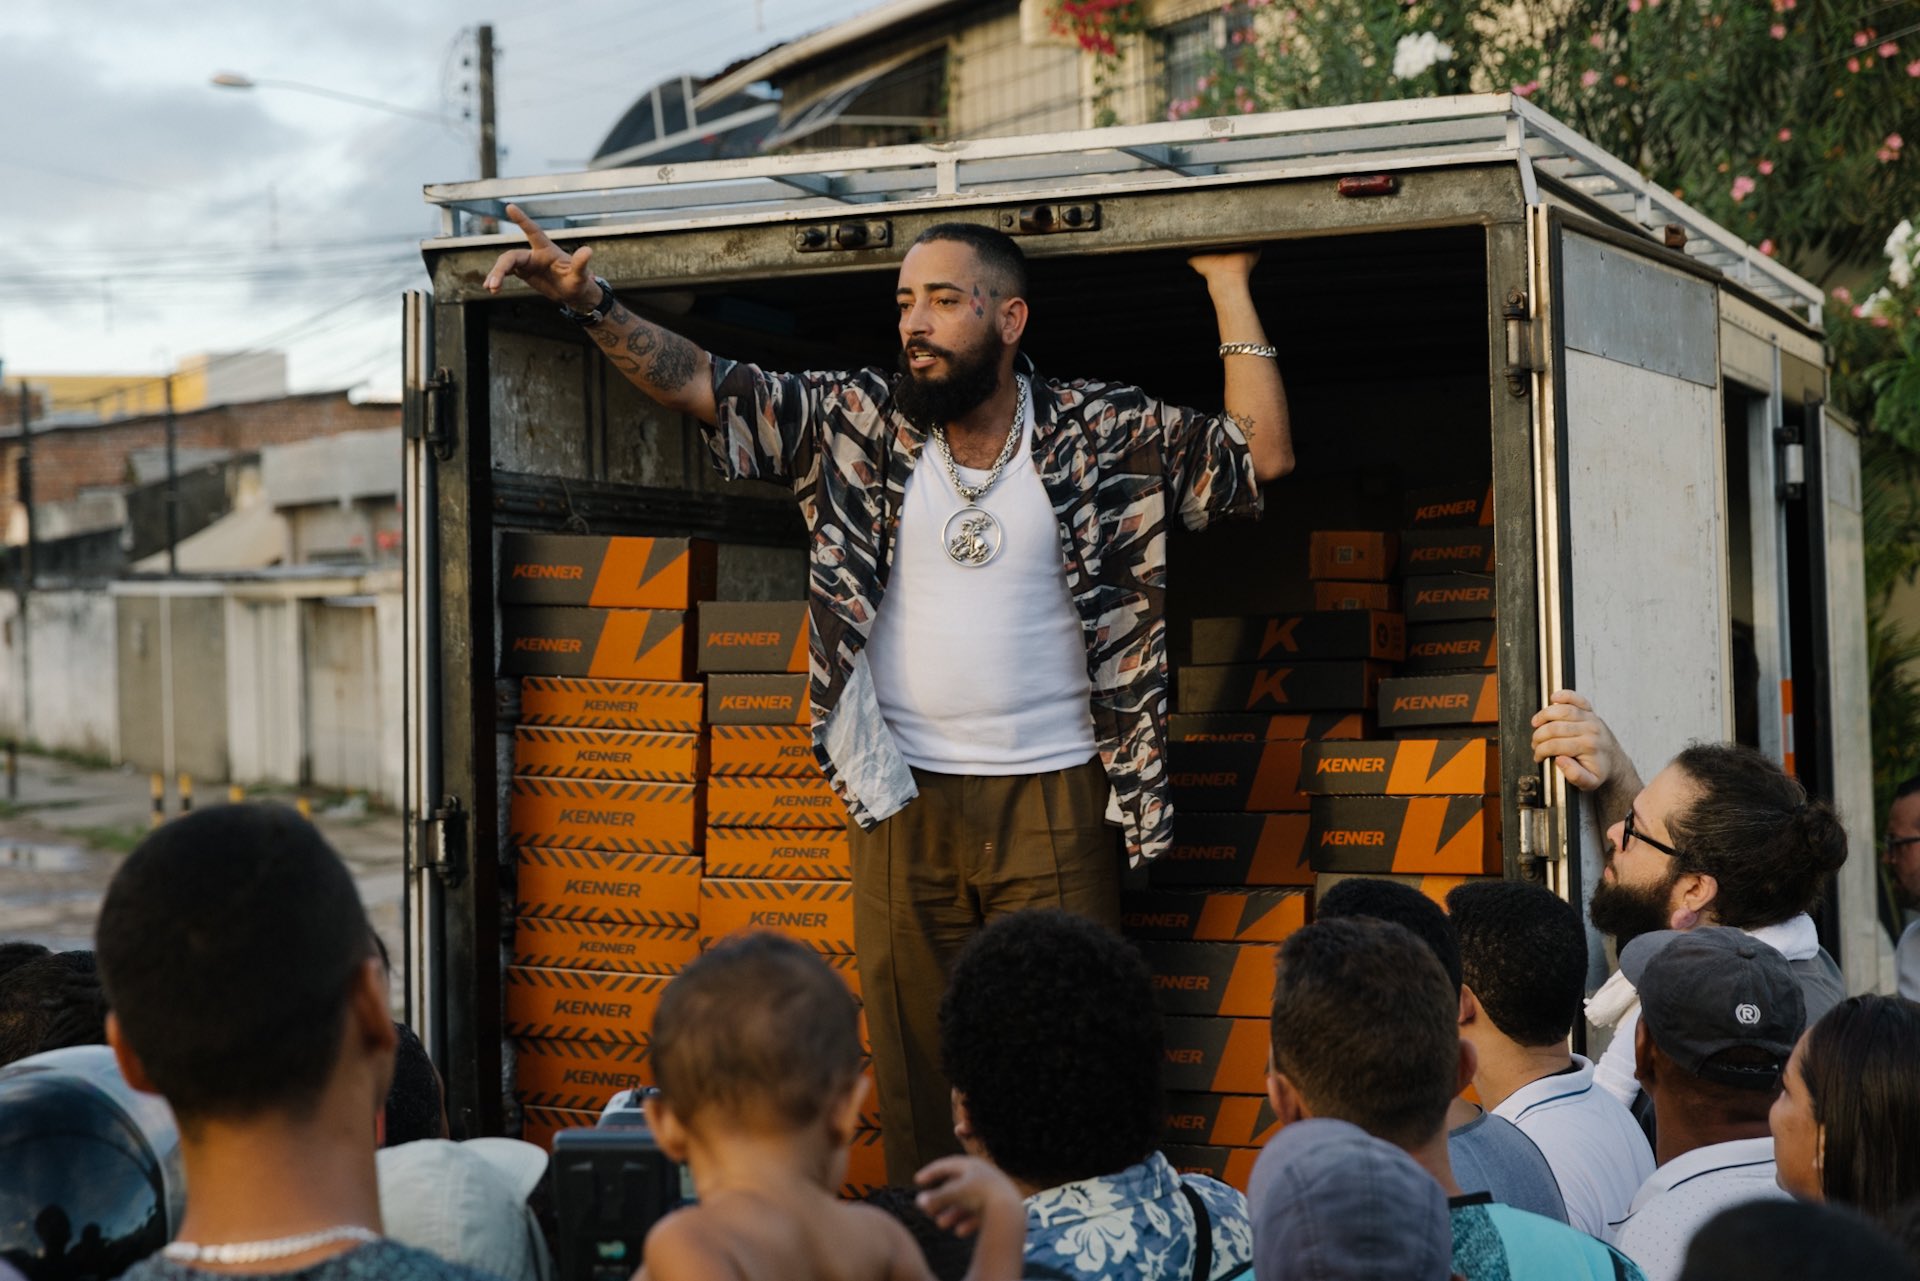 NOTTHESAMO on X: "A pedido do rapper FBC, a Kenner levou um mini caminhão de 200 pares de sandálias para a comunidade Peixinhos, em Recife, que foram distribuídos pelo artista para os